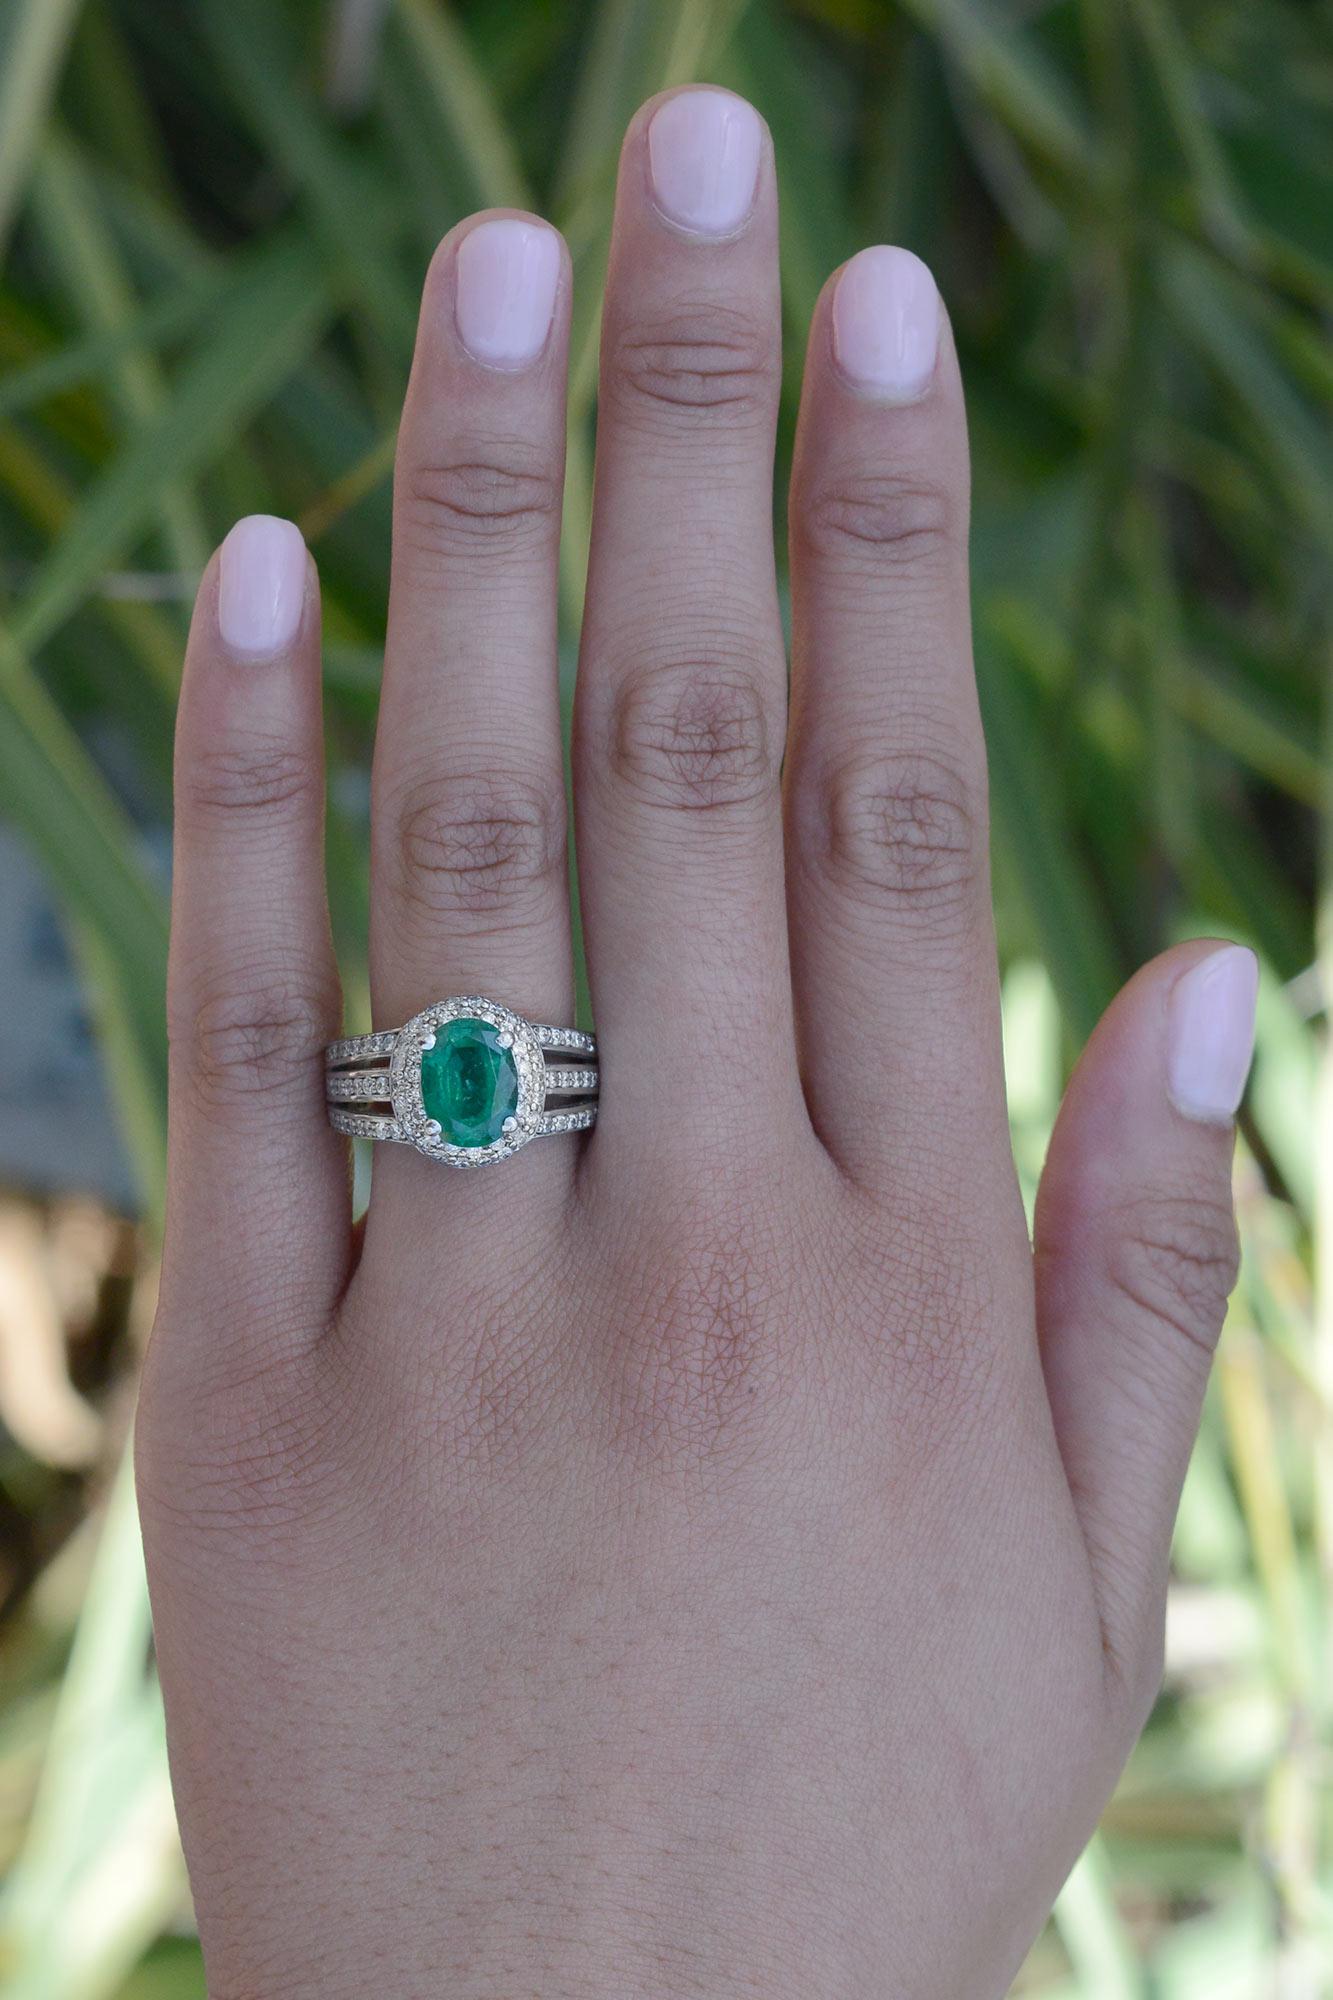 Dieser Verlobungsring mit Smaragd und Diamanten im Vintage-Stil ist ein atemberaubendes Schmuckstück, das mit seinem satten Farbton und den schimmernden Diamanten Bewunderung hervorruft. Das breite, 3-reihige Diamantband ist mit einem auffälligen